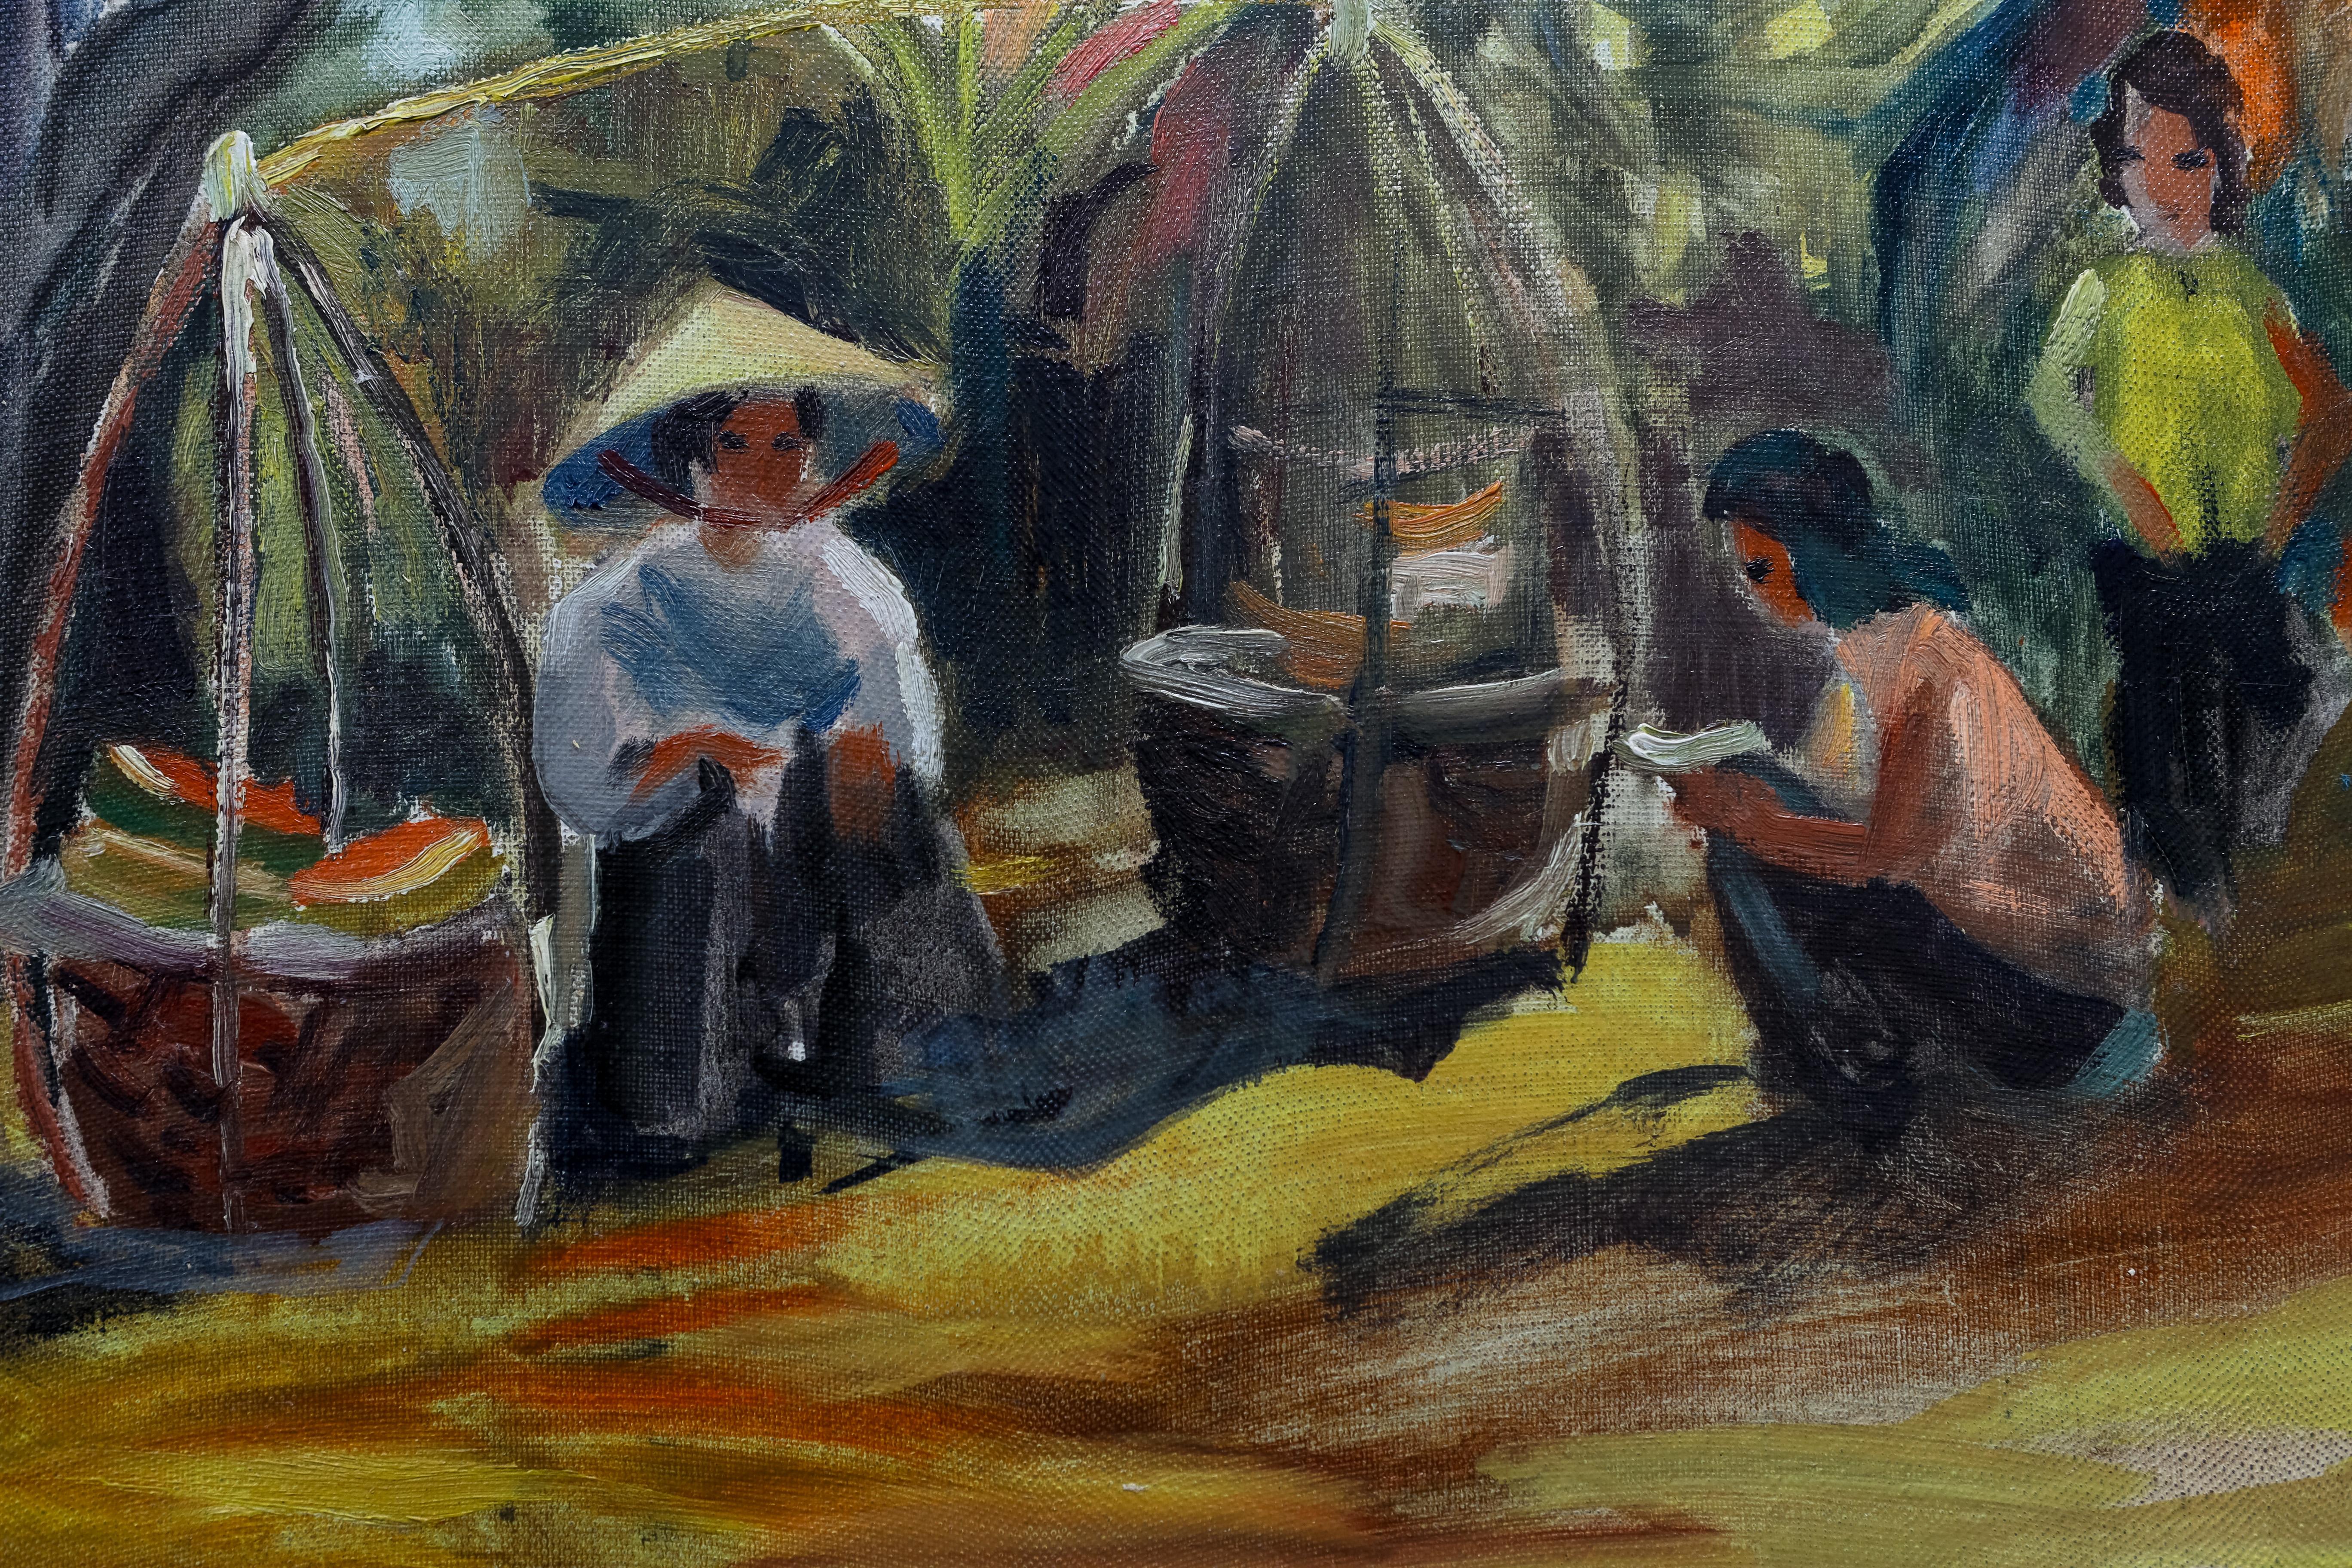 J Buttin est un artiste français qui a vécu en Indochine. Cette peinture représente des femmes porteuses d'eau sous des feuilles de bananier. Il est signé . La peinture a été récemment nettoyée par un professionnel. Veuillez noter que le tableau